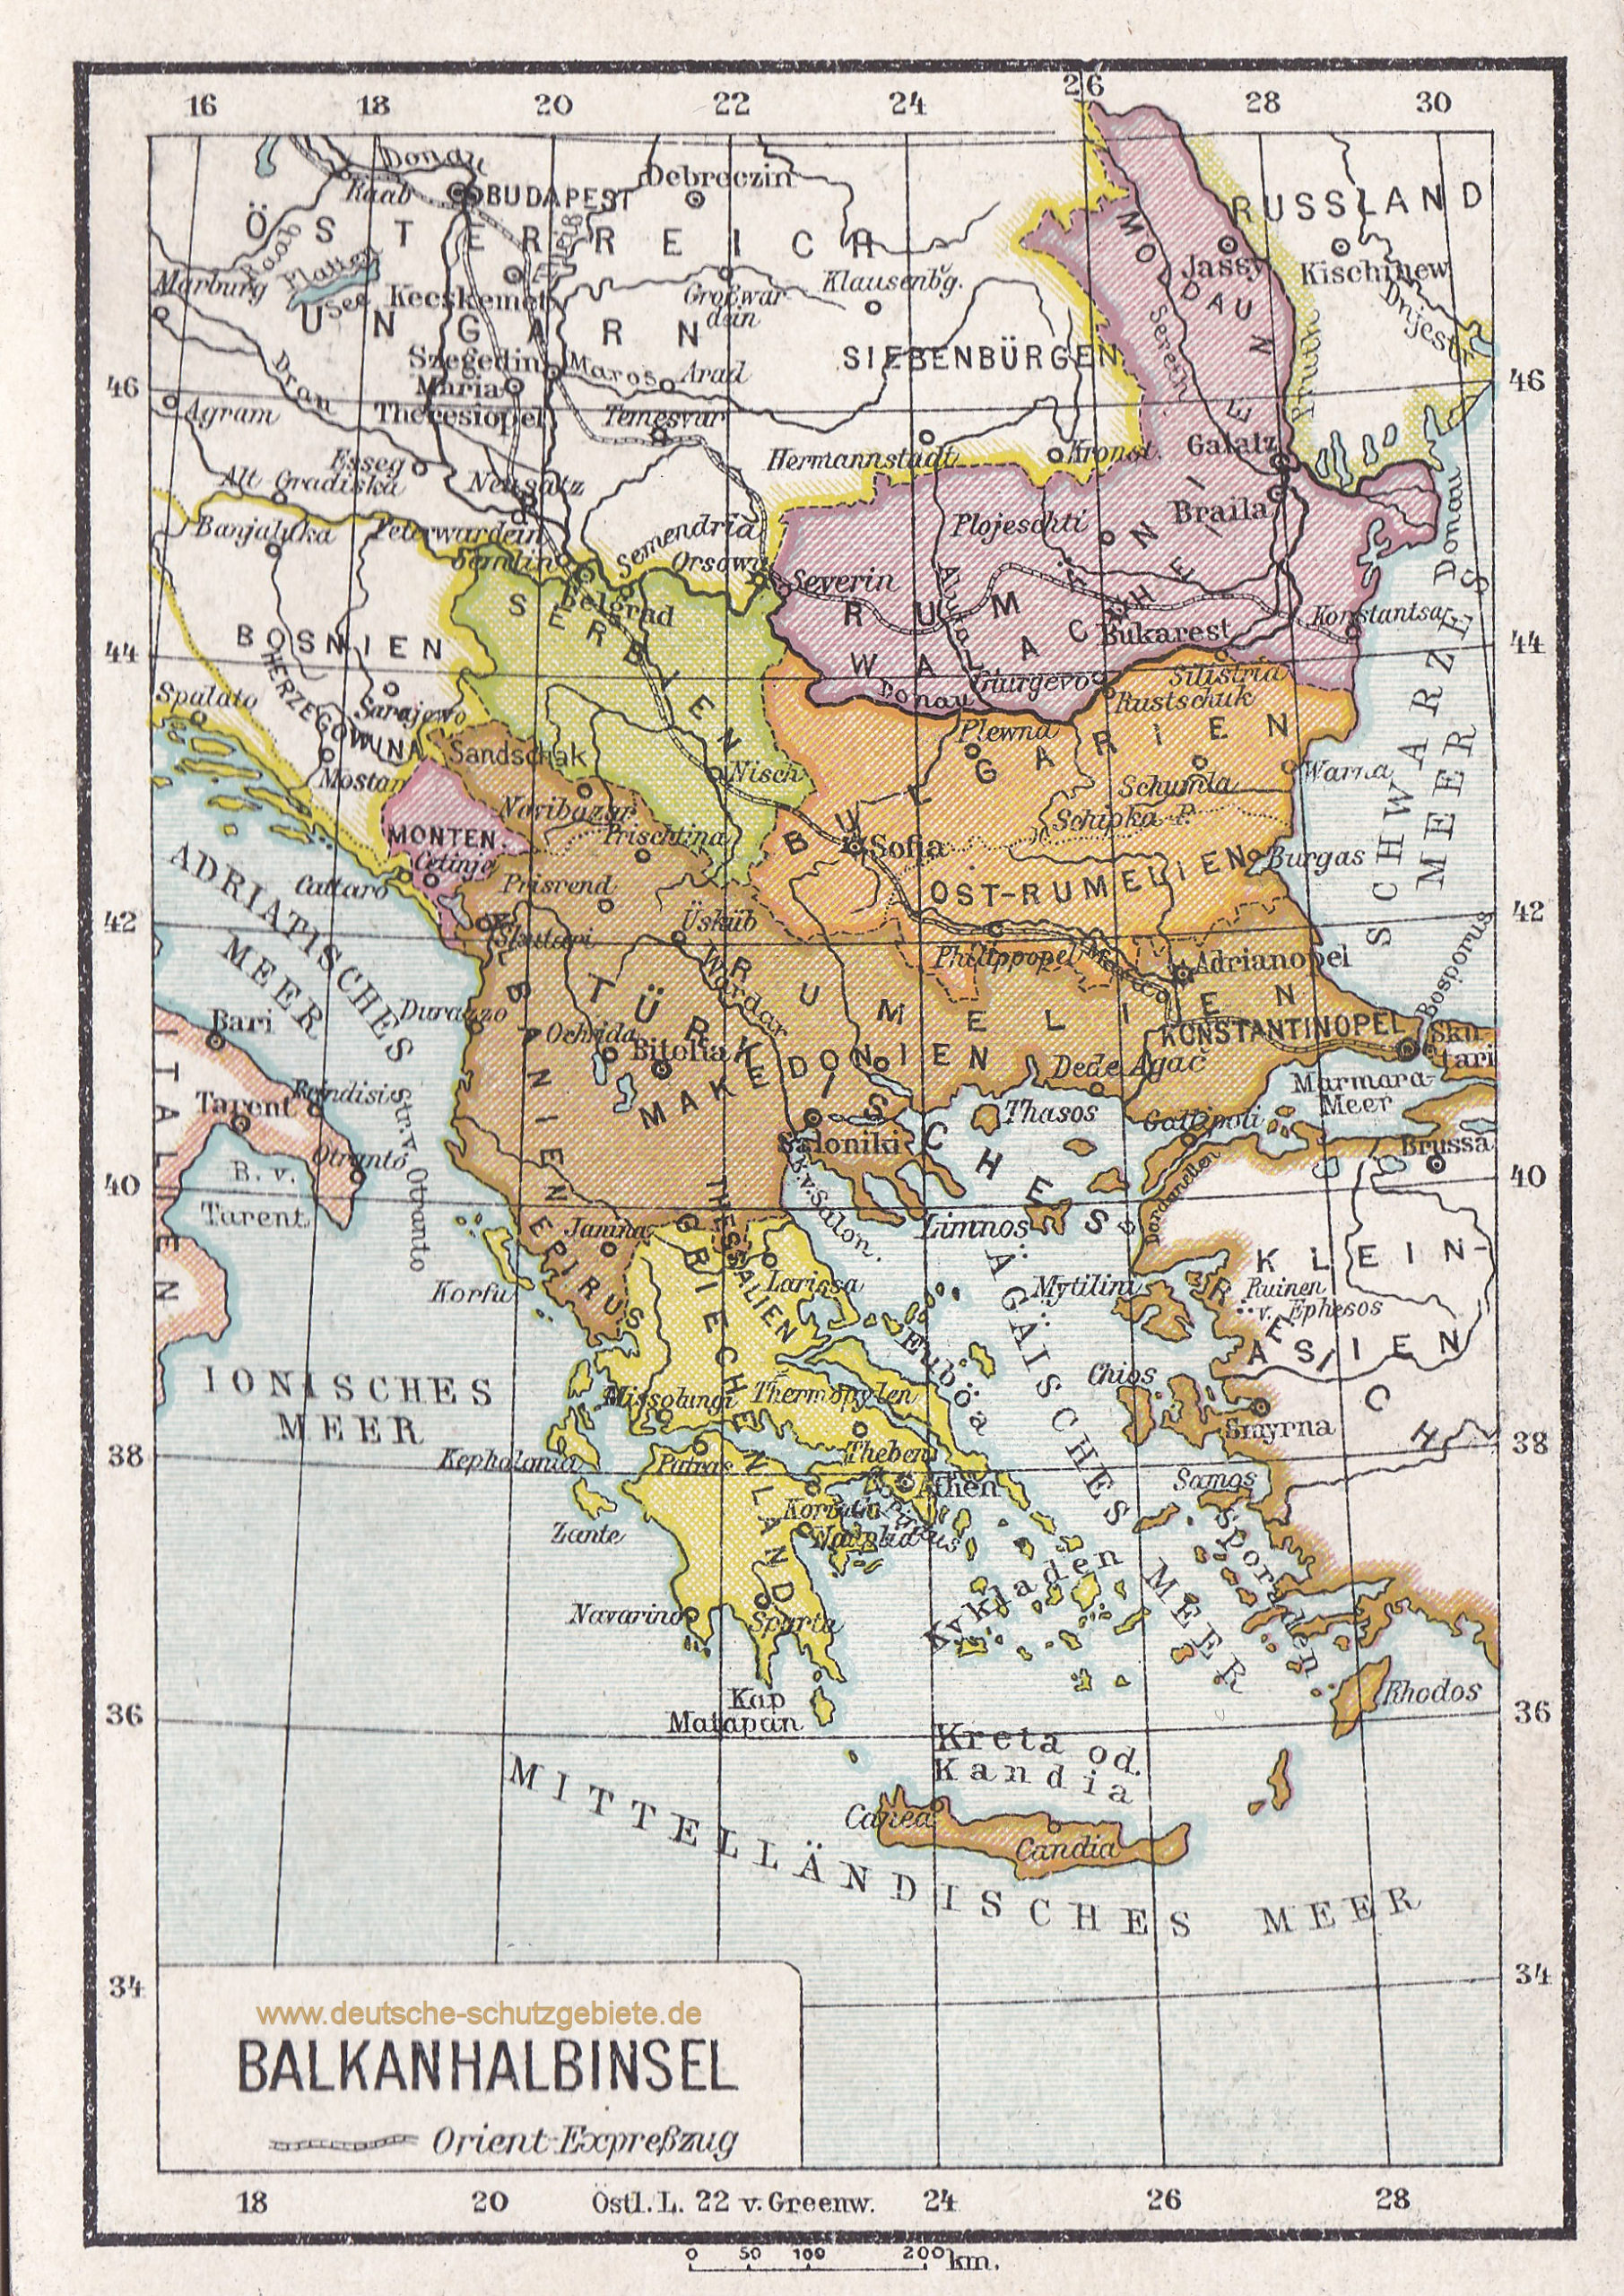 Balkanhalbinsel (1912)